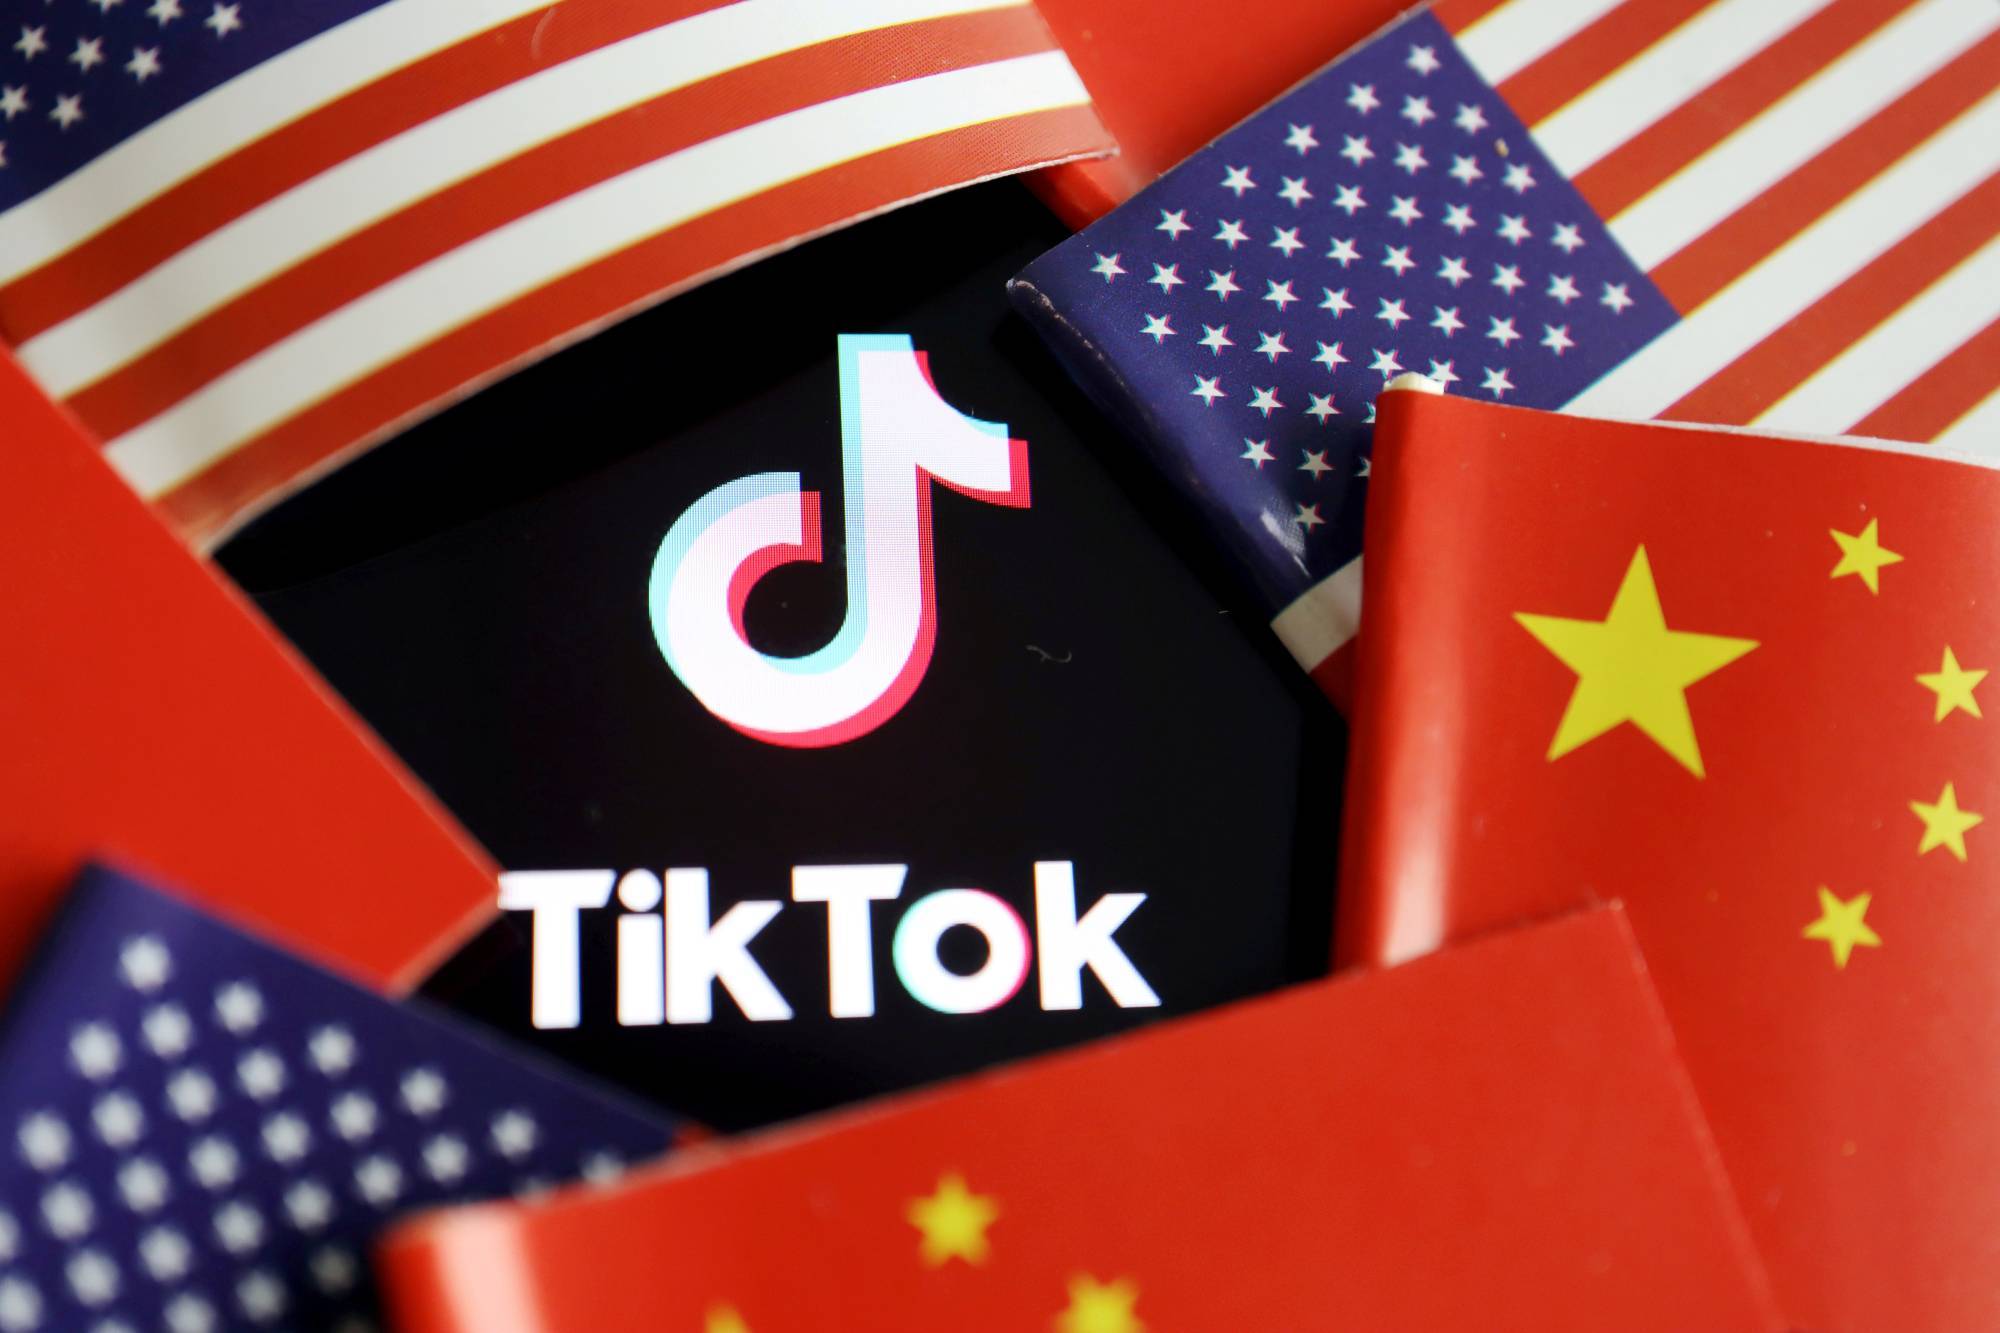 TikTok: TikTok đã trở thành nền tảng giải trí số một tại Việt Nam với hàng triệu người dùng mỗi ngày. Từ các video hài hước đến những bài hát mới nhất, TikTok mang đến cho bạn những giây phút thư giãn tuyệt vời. Hãy thưởng thức những hình ảnh tuyệt đẹp được chia sẻ trên TikTok.